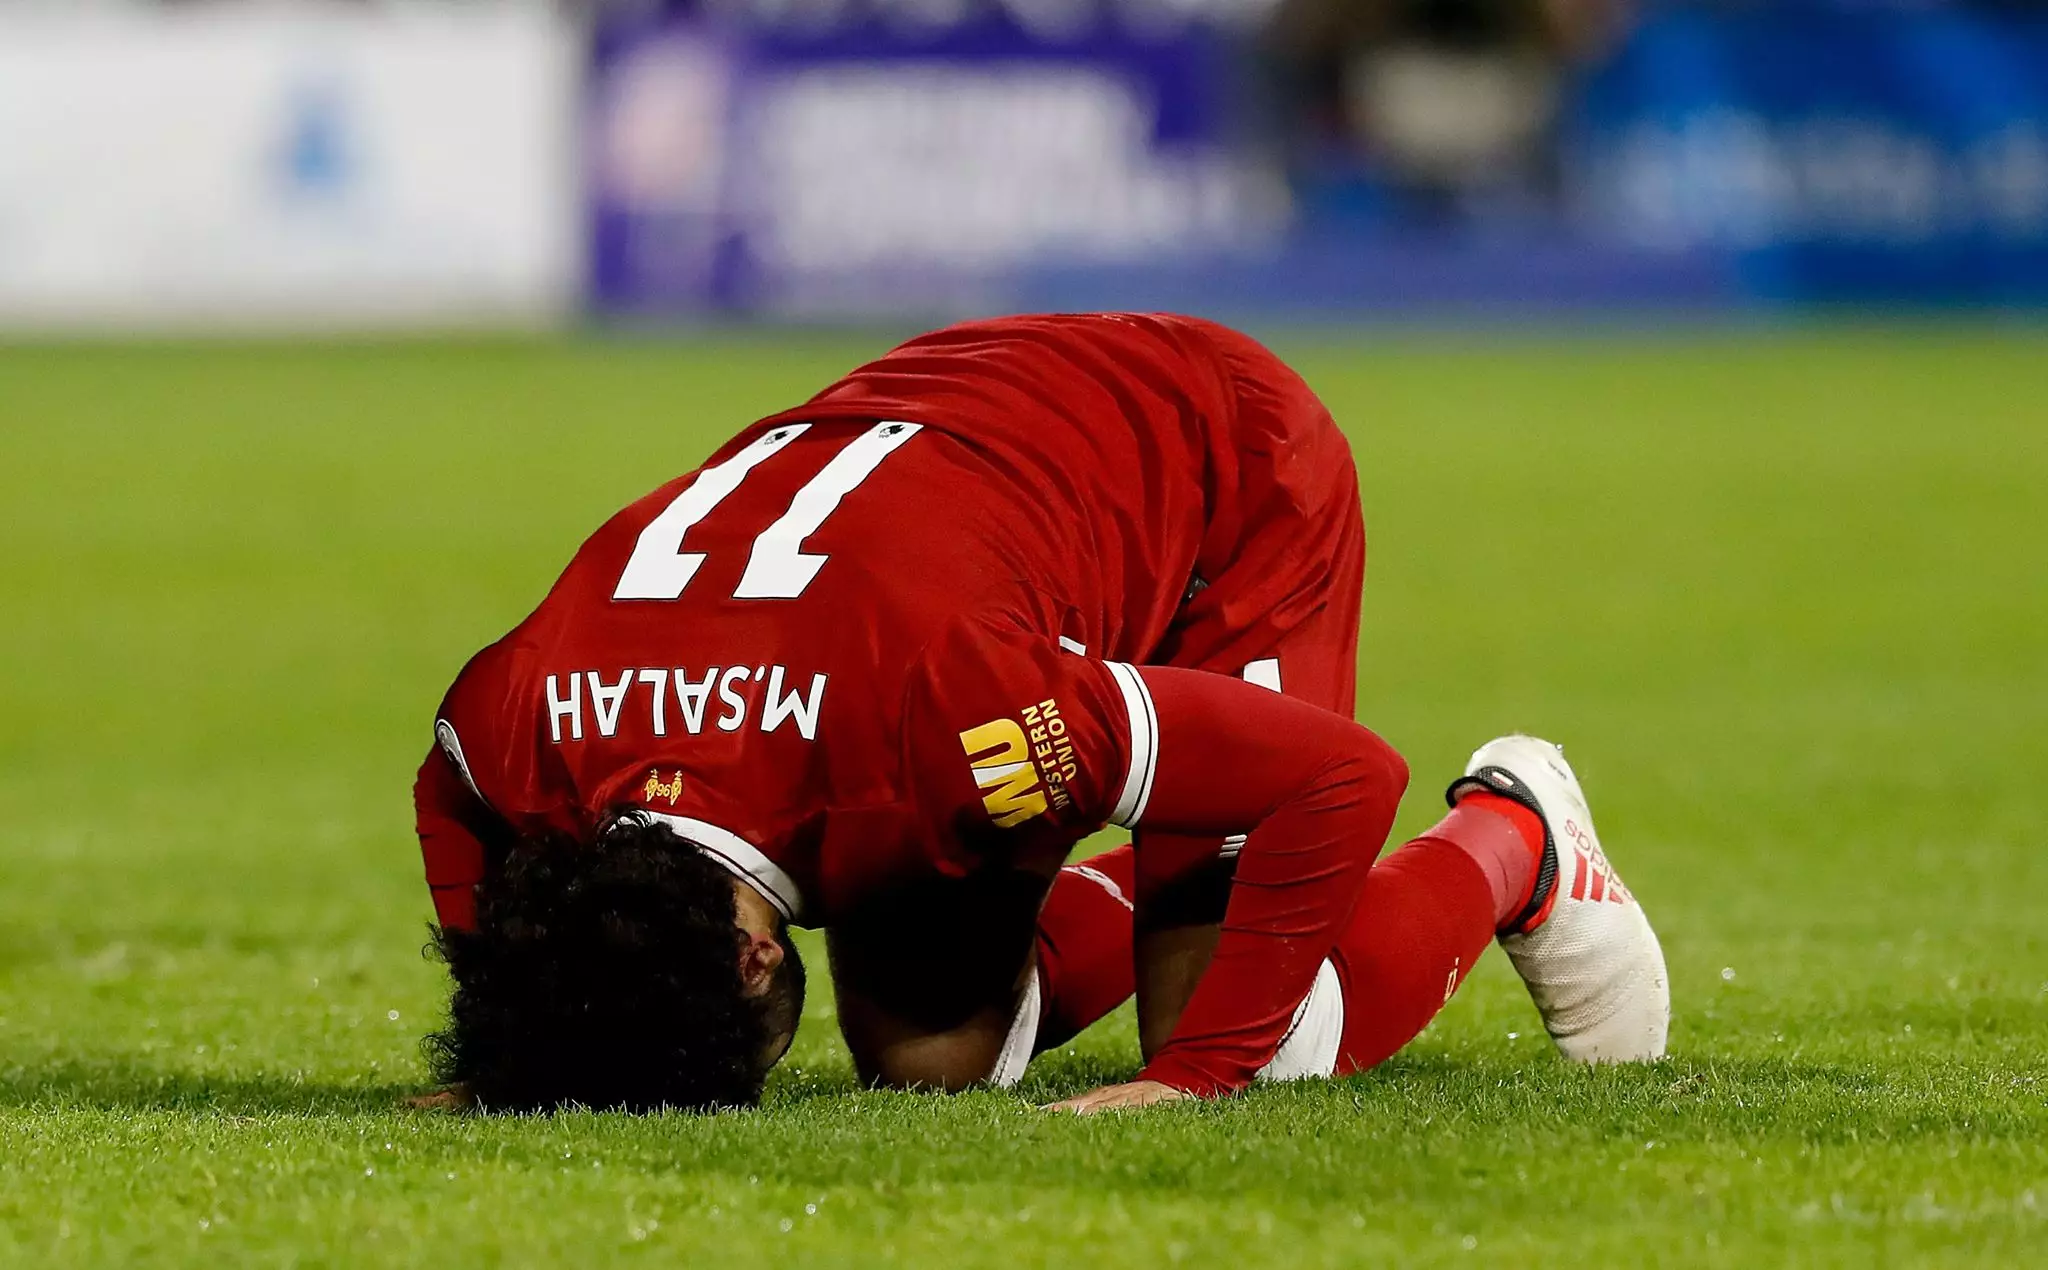 Salah celebrates scoring a goal. Image: PA